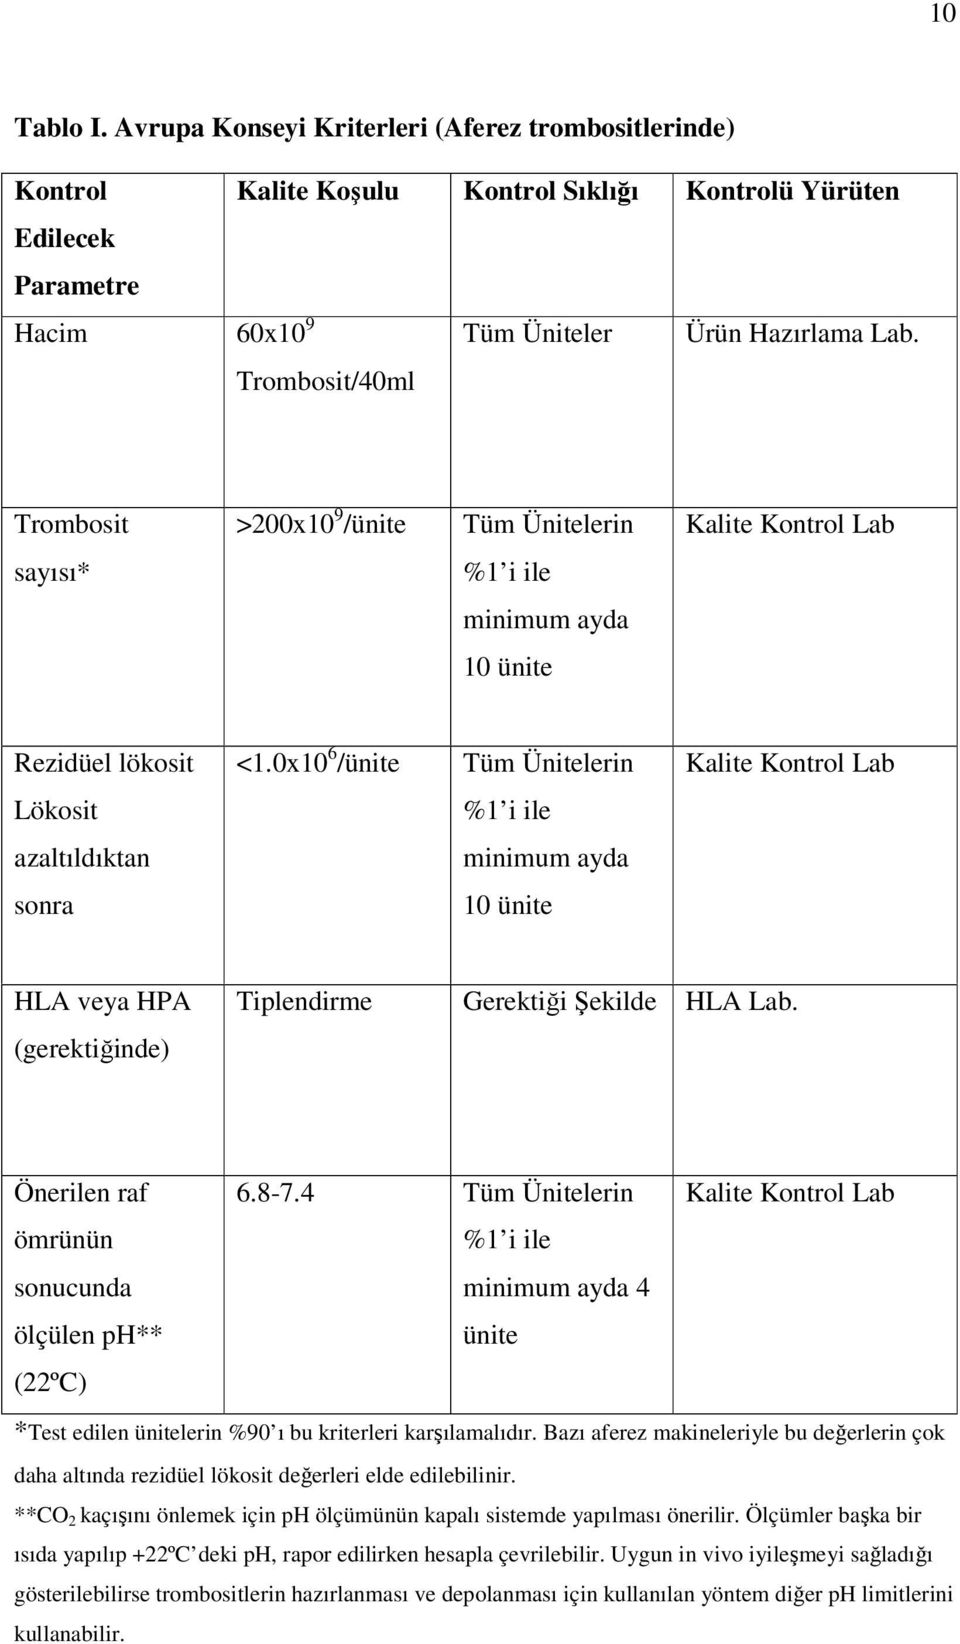 0x10 6 /ünite Tüm Ünitelerin Kalite Kontrol Lab Lökosit %1 i ile azaltıldıktan minimum ayda sonra 10 ünite HLA veya HPA (gerektiğinde) Tiplendirme Gerektiği Şekilde HLA Lab.